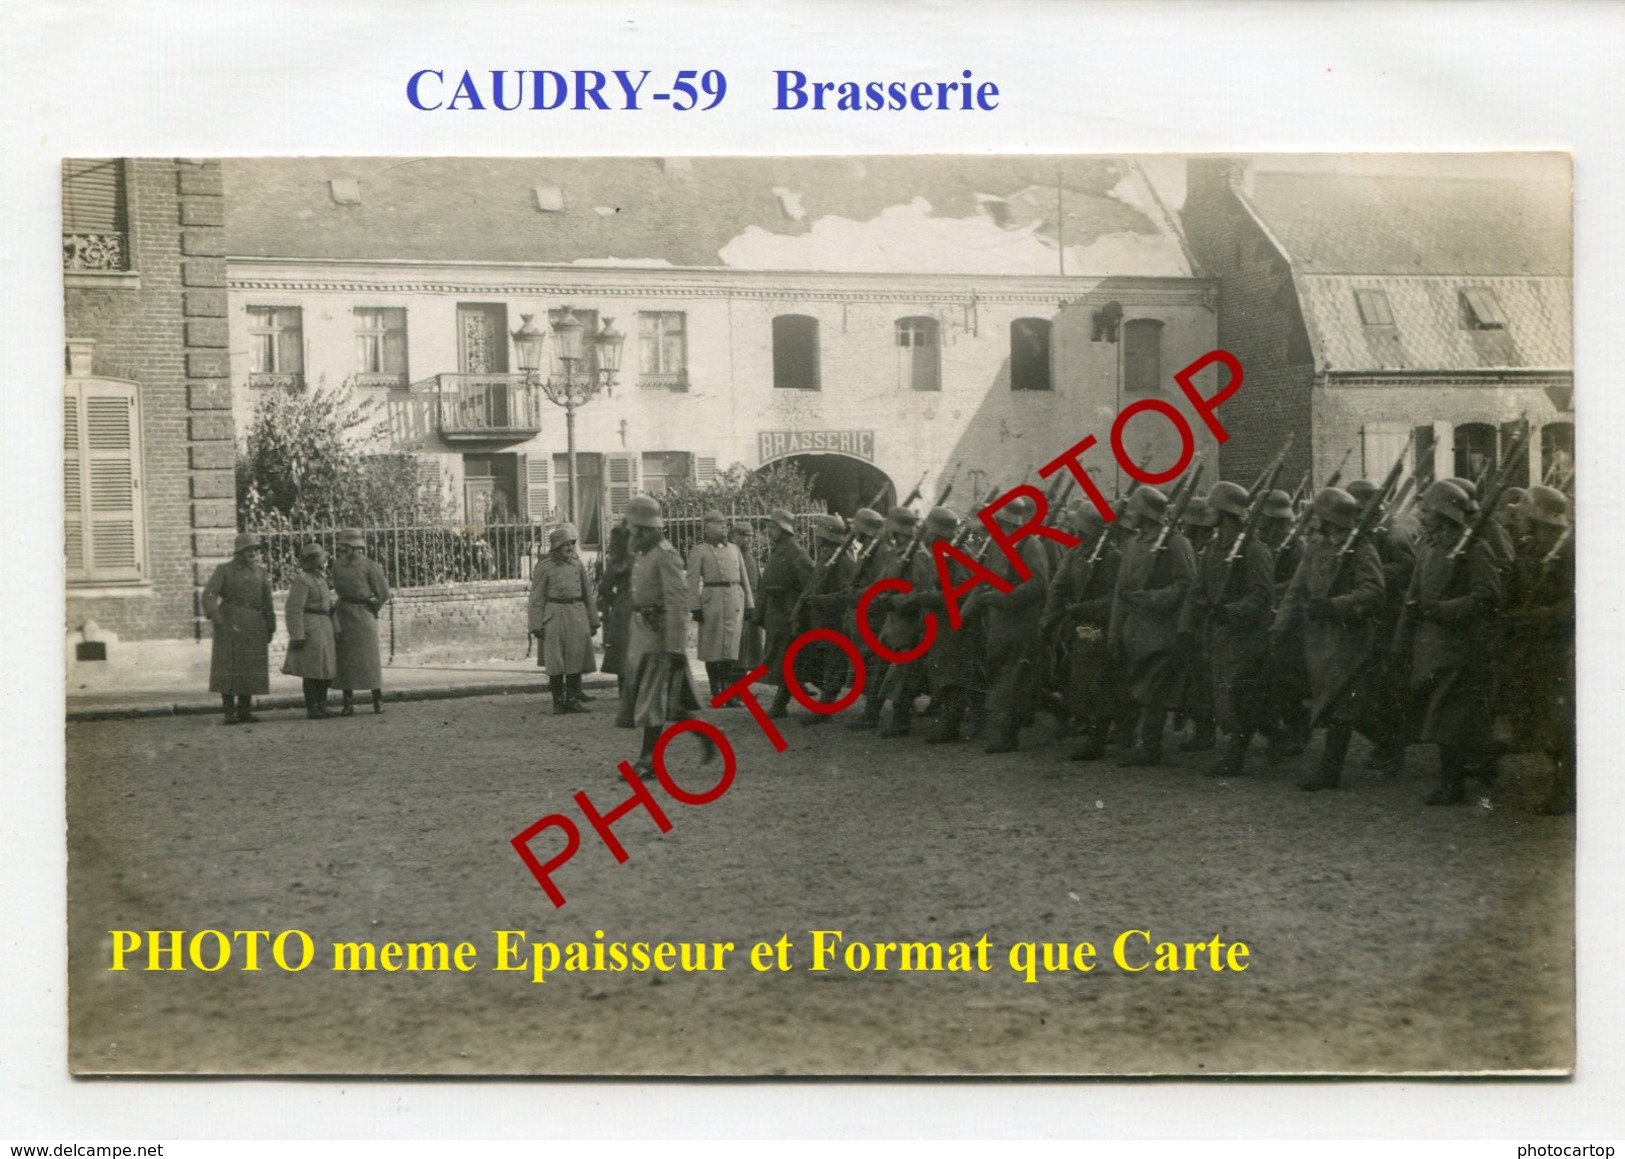 Brasserie-CAUDRY-Defile De Troupe-Soldats-CARTE PHOTO Allemande-Guerre 14-18-1 WK-FRANCE-59-Militaria- - Caudry